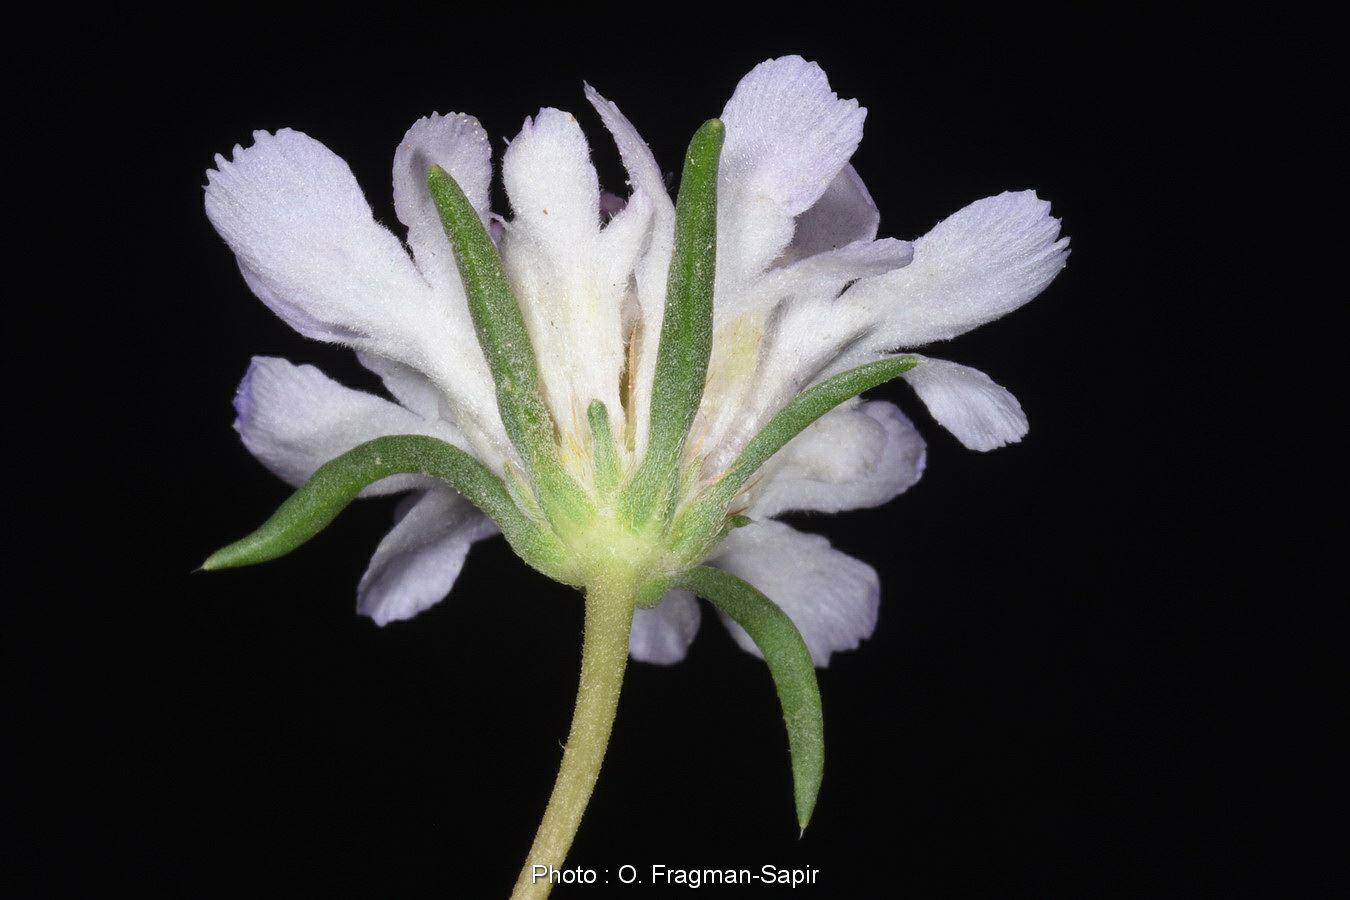 Lomelosia argentea - Silver Scabious, Silver Scabious, תגית קיצית, תגית קיצית, תגית קיצית, תגית קיצית